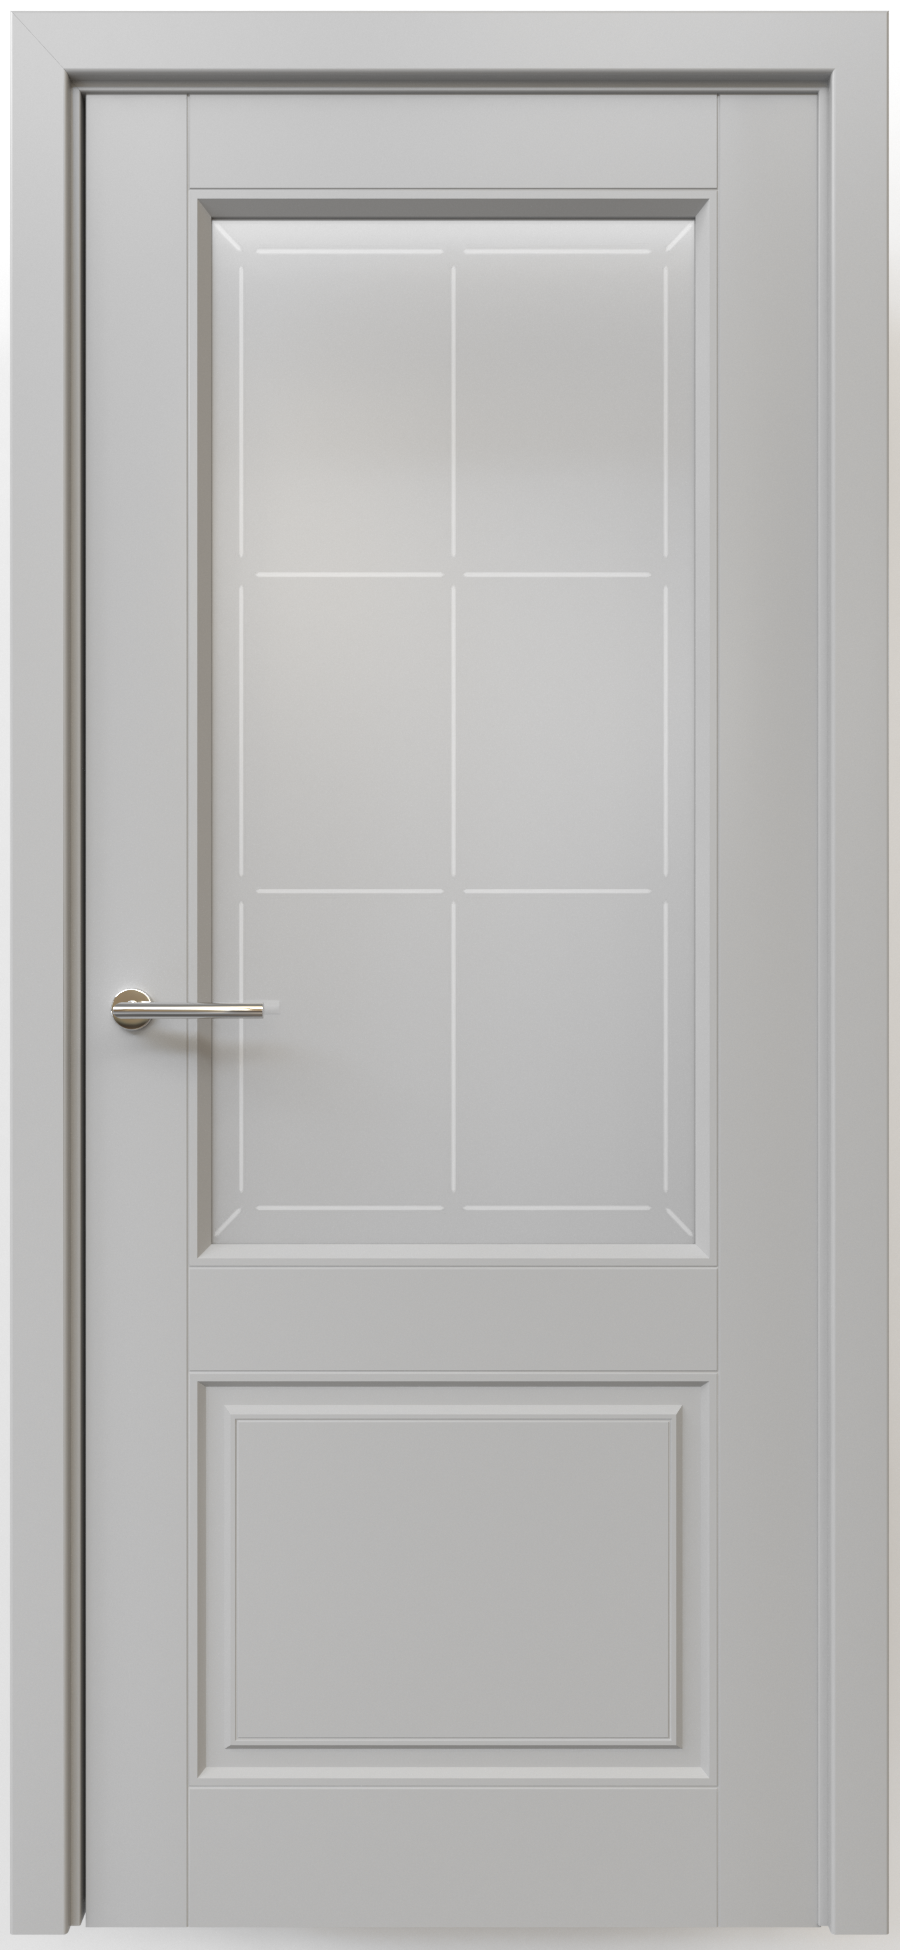 Полотно дверное остекленное Эмаль Классика-2 ПРАВОЕ 900 серый стекло мателюкс "Прованс"(защелка маг)